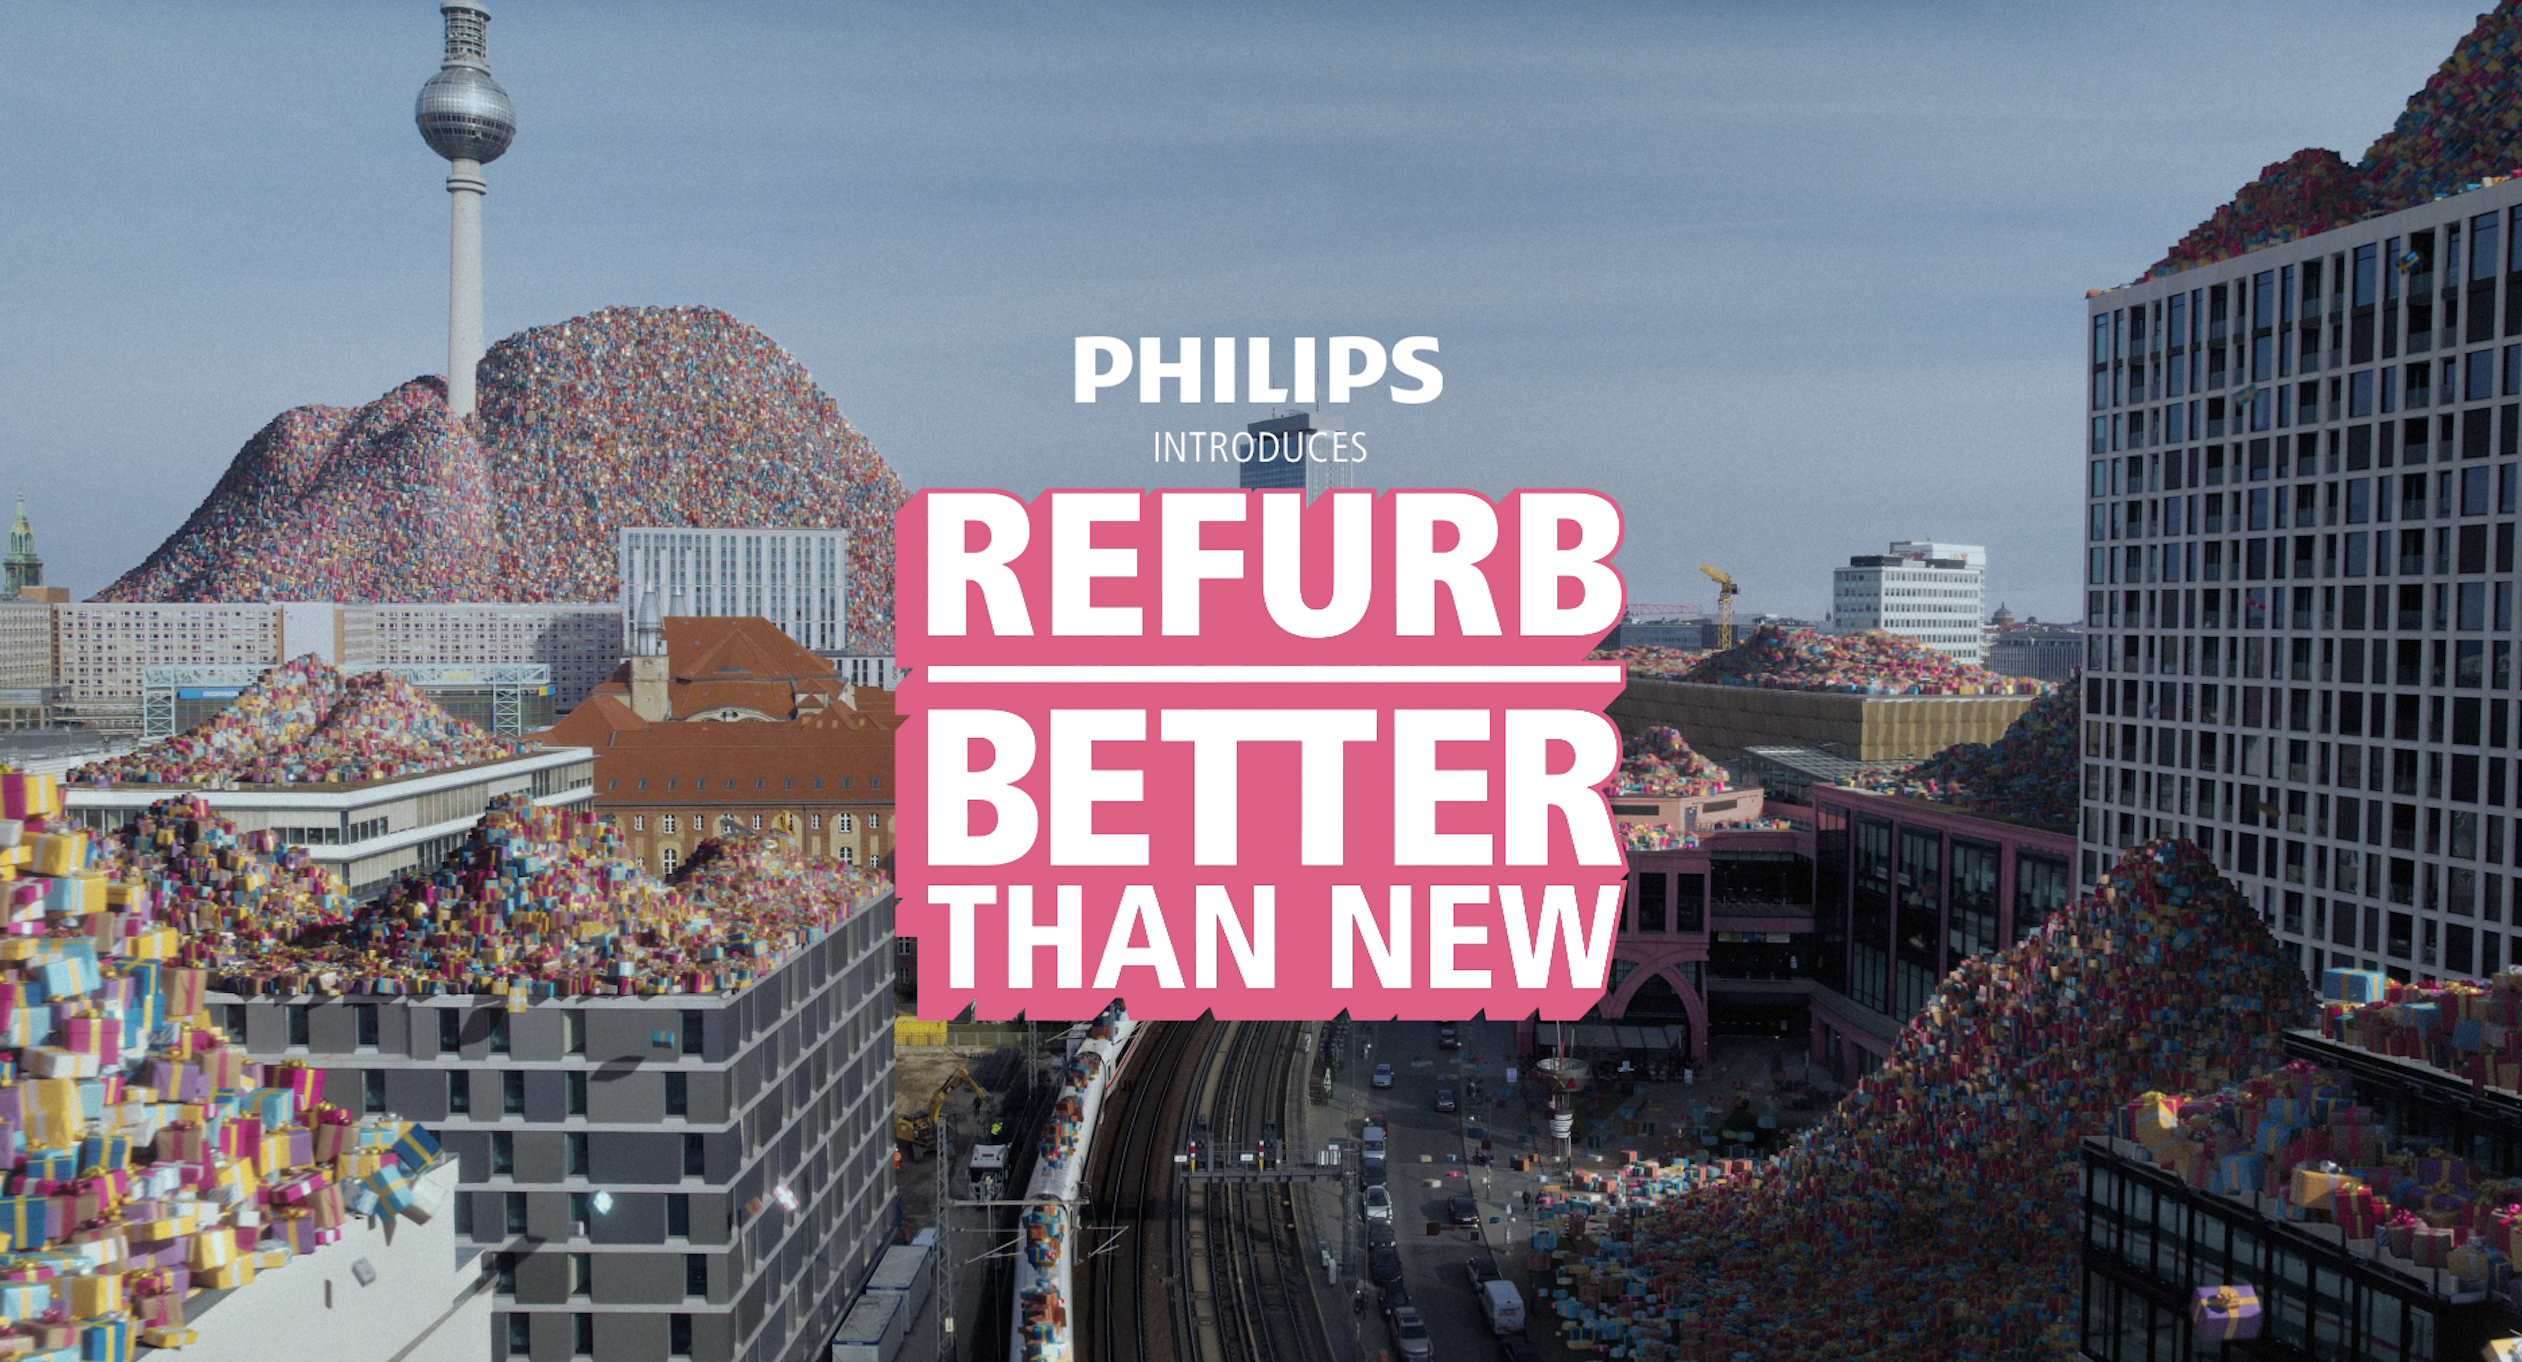 Philips' immersive campagne moedigt het kopen van refurbished producten aan